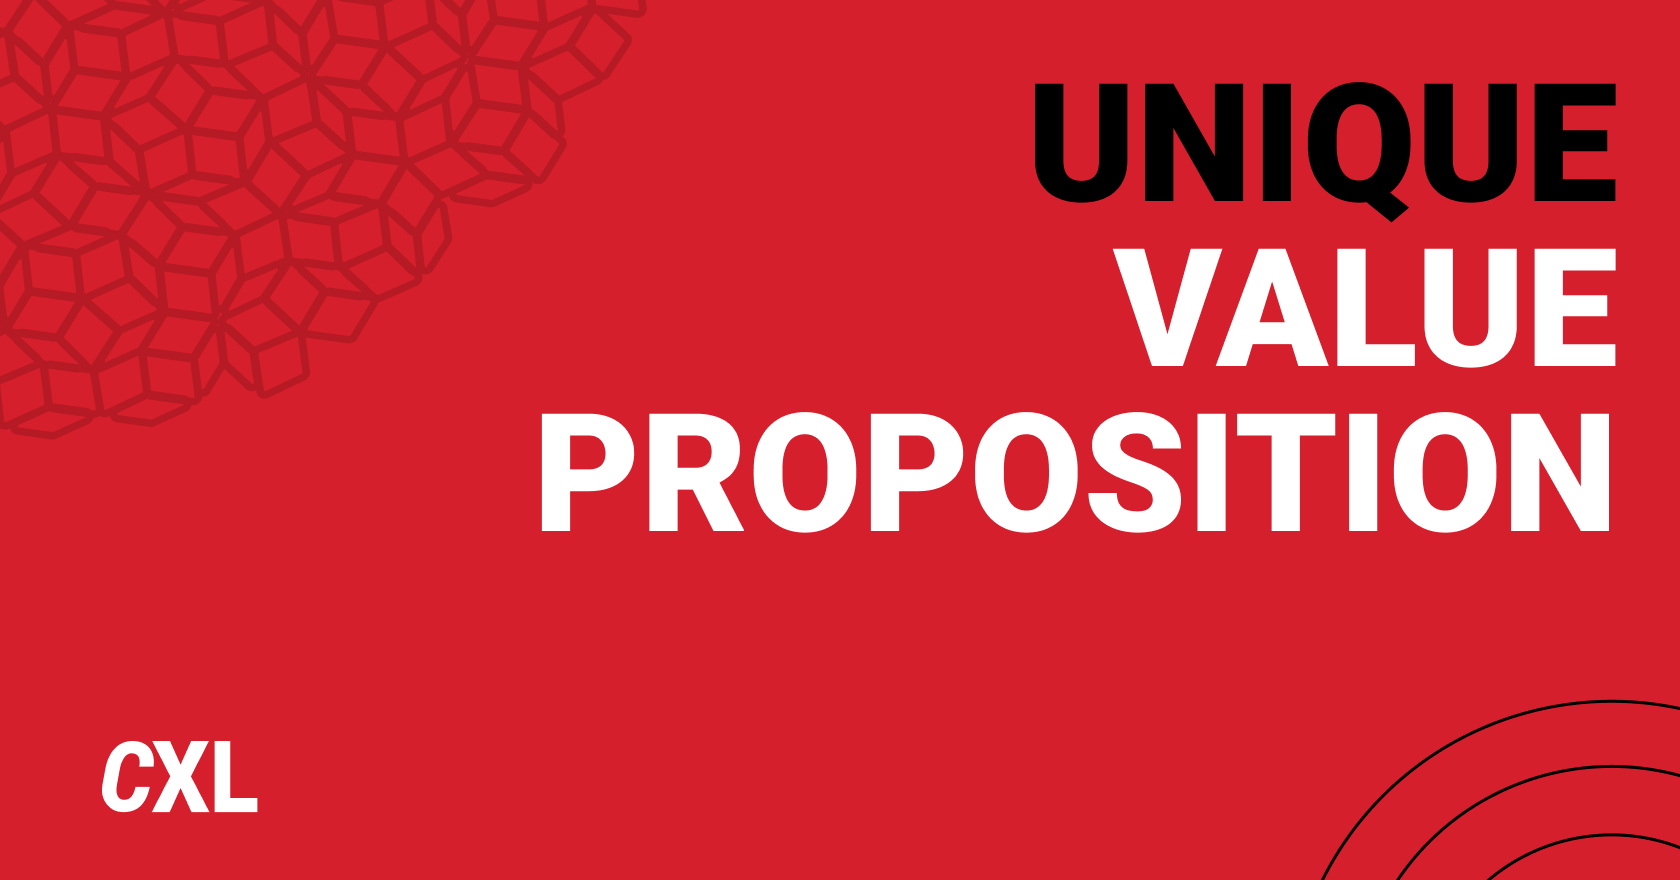 https://cxl.com/wp-content/uploads/2022/05/Unique-value-proposition-1.png